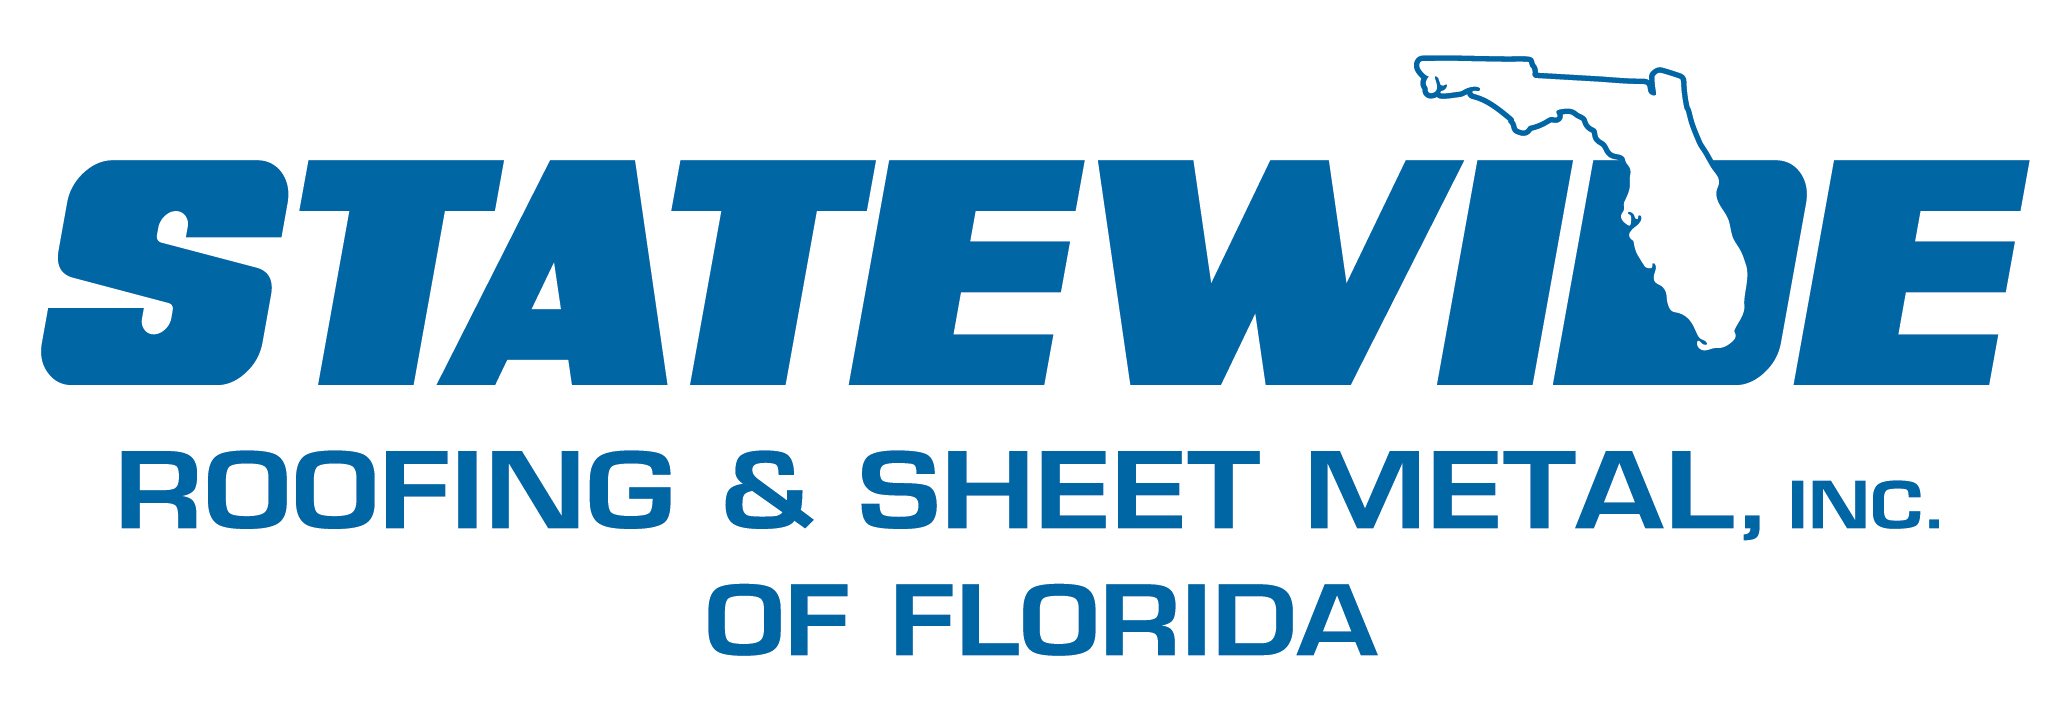 Statewide Roofing & Sheetmetal, Inc. Logo